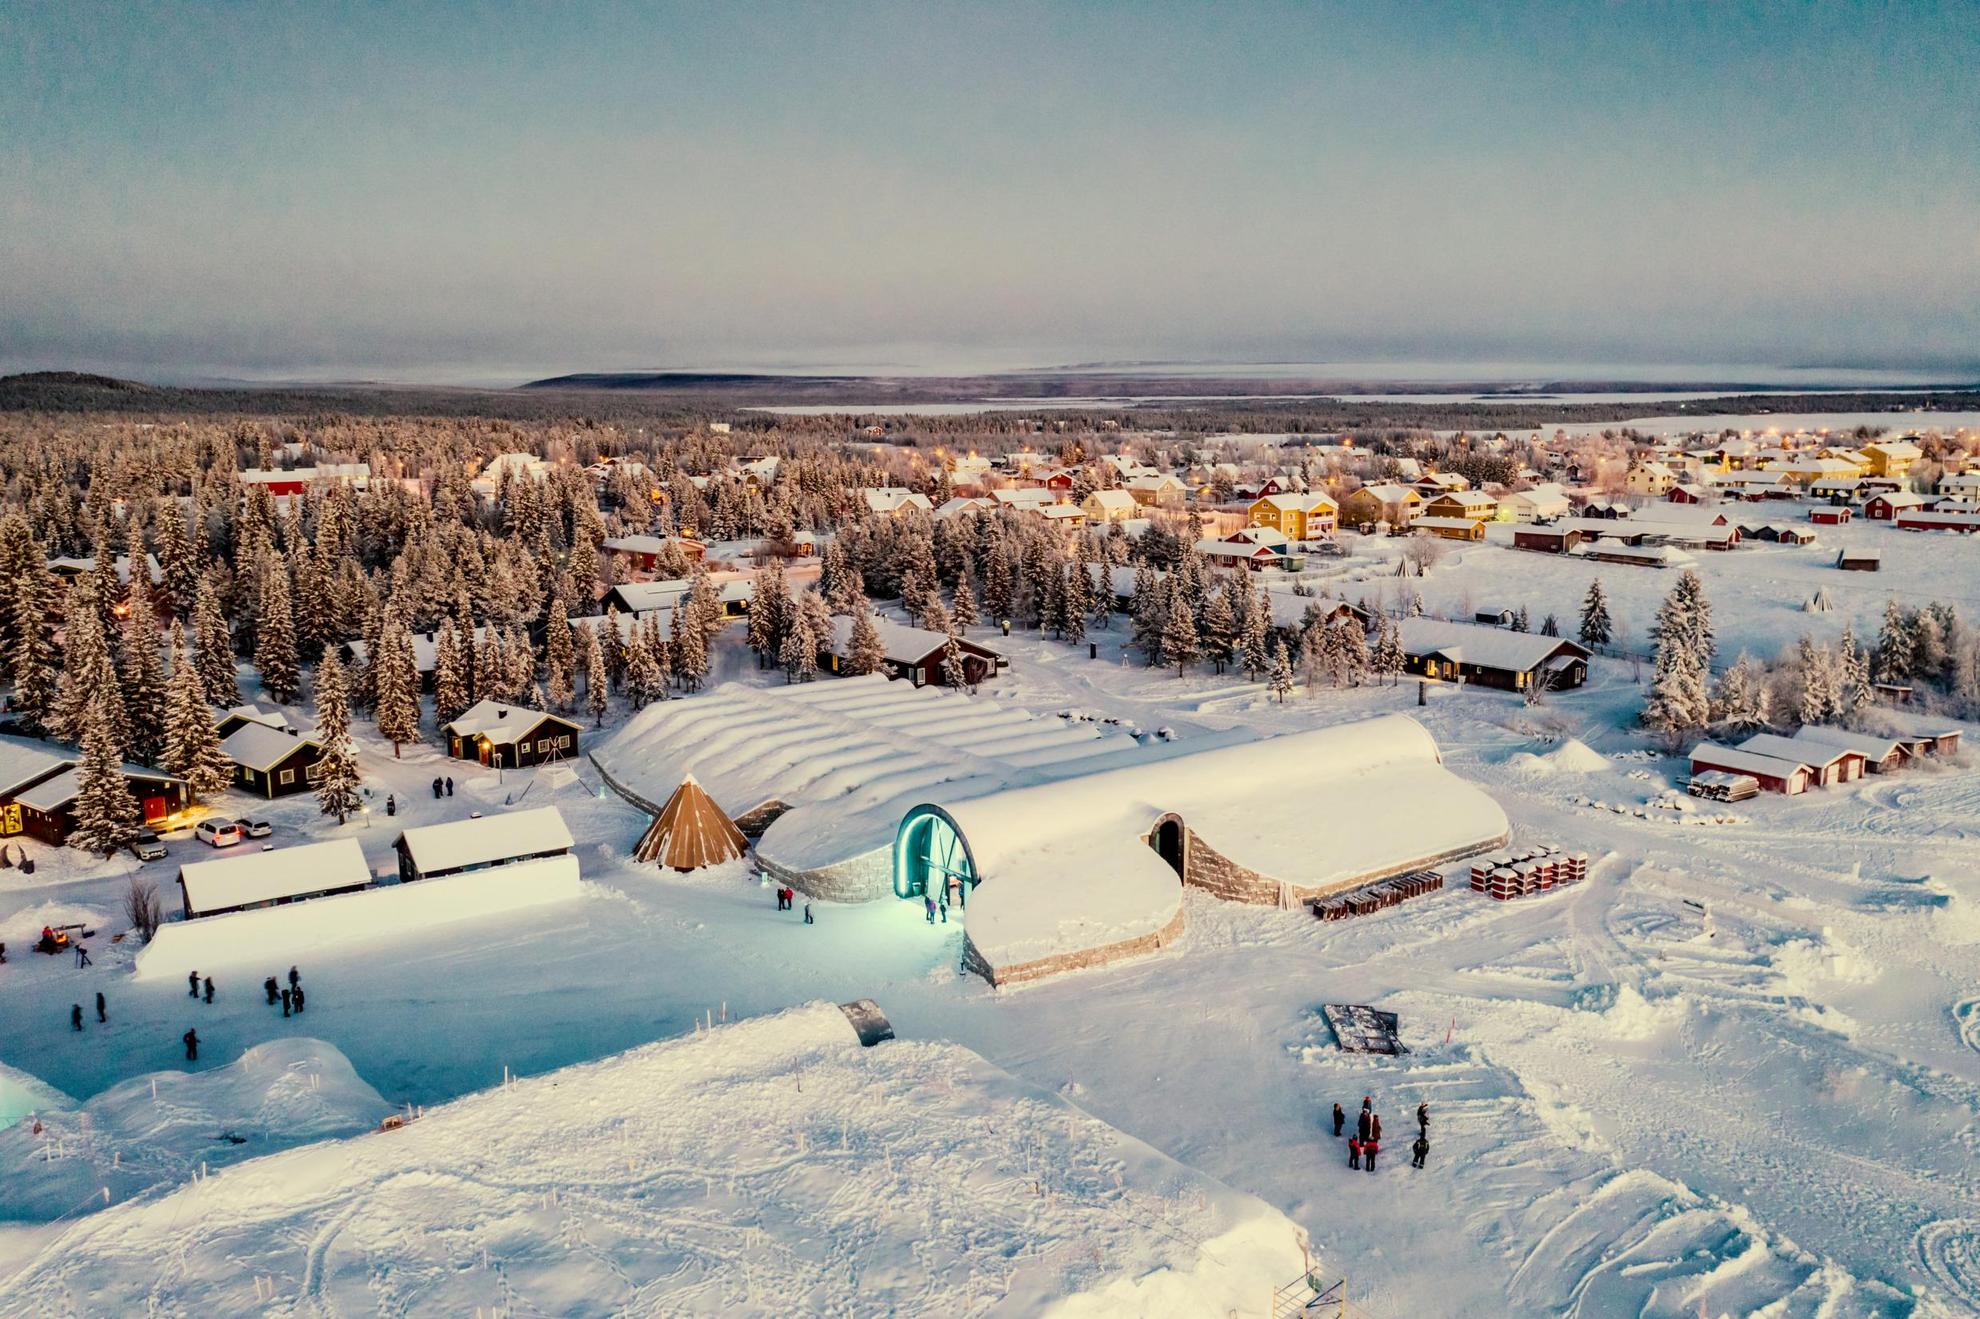 Luchtfoto van een besneeuwd landschap met bossen, huizen en een paar mensen die rondlopen.